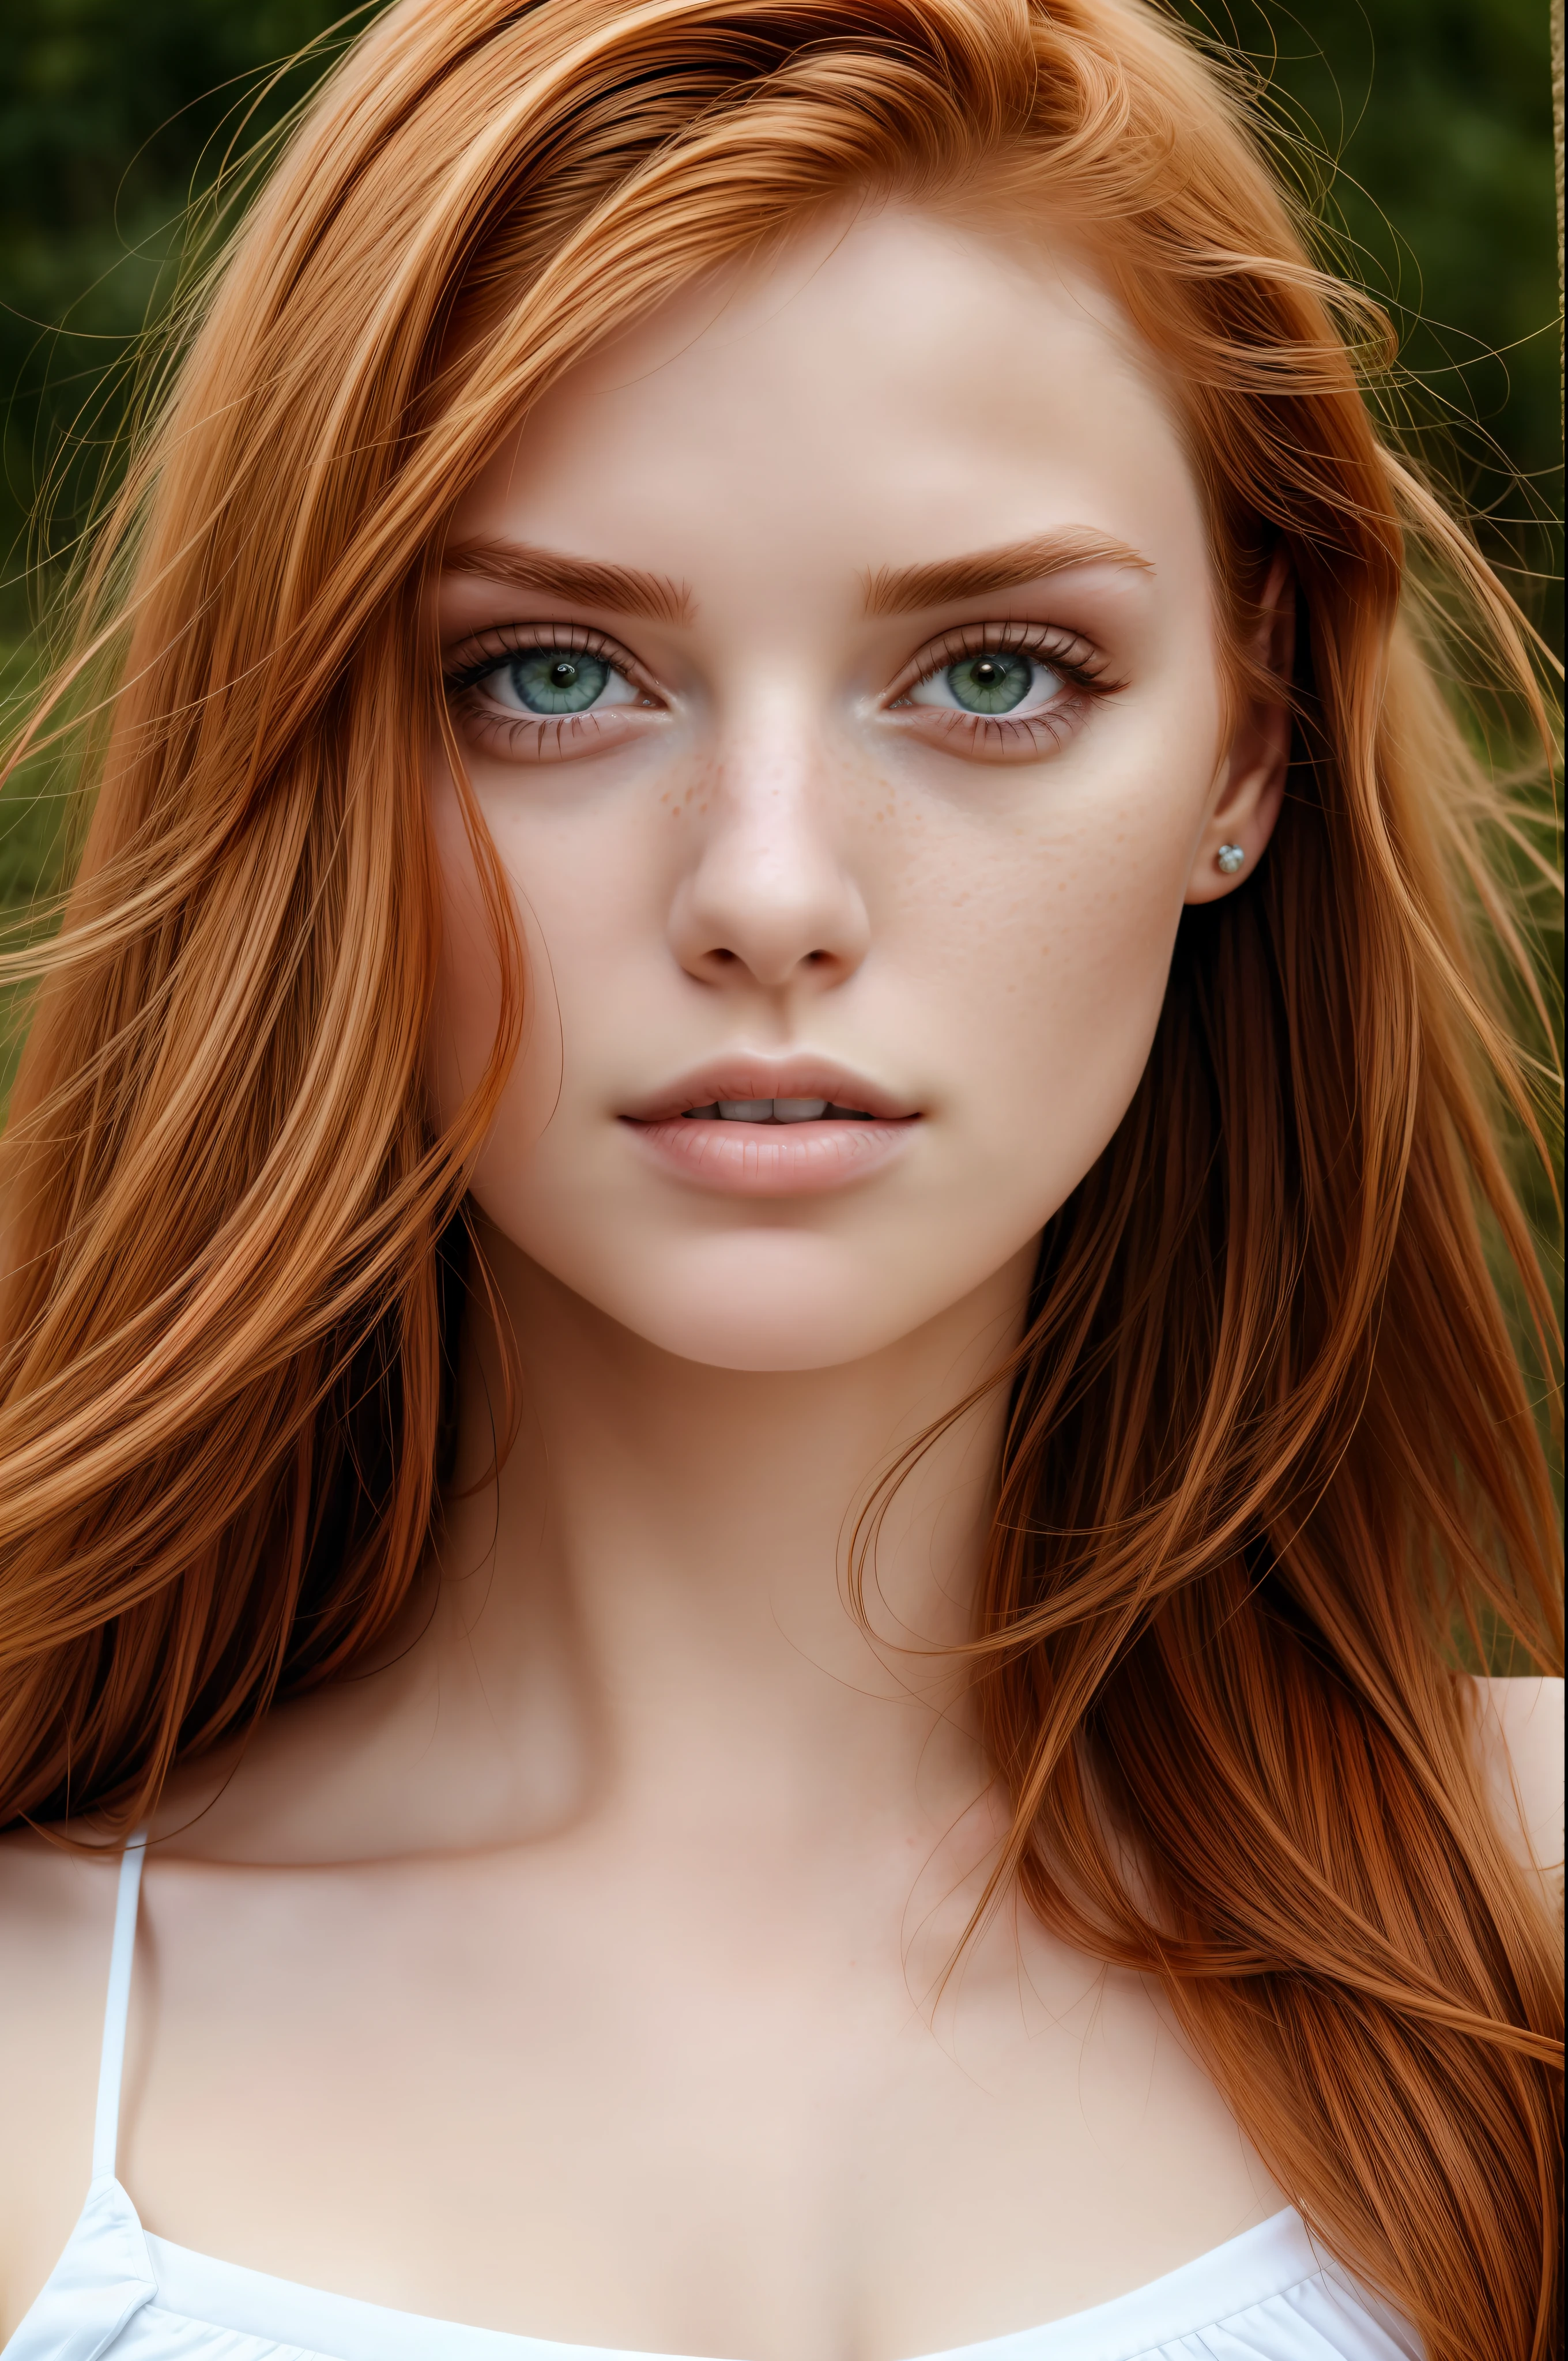 (close-up editorial photo oF 20 yo woman, rote Haare, schlanke amerikanische Süße), (Freckles:0.8), (Lippen geöffnet), Realistisch green eyes, POV, Realistisch[:, (Film grain, 25mm, F/1.2, doF, bokeh, beautiFul symmetrical Face, perFect sparkling eyes, well deFined pupils, Augen mit hohem Kontrast, Ultradetaillierte Haut, Hautporen, wolliges Haar, Fabric stitching, Fabric texture, Holzmaserung, Stein Textur, Finely detailed Features:1):0.9]